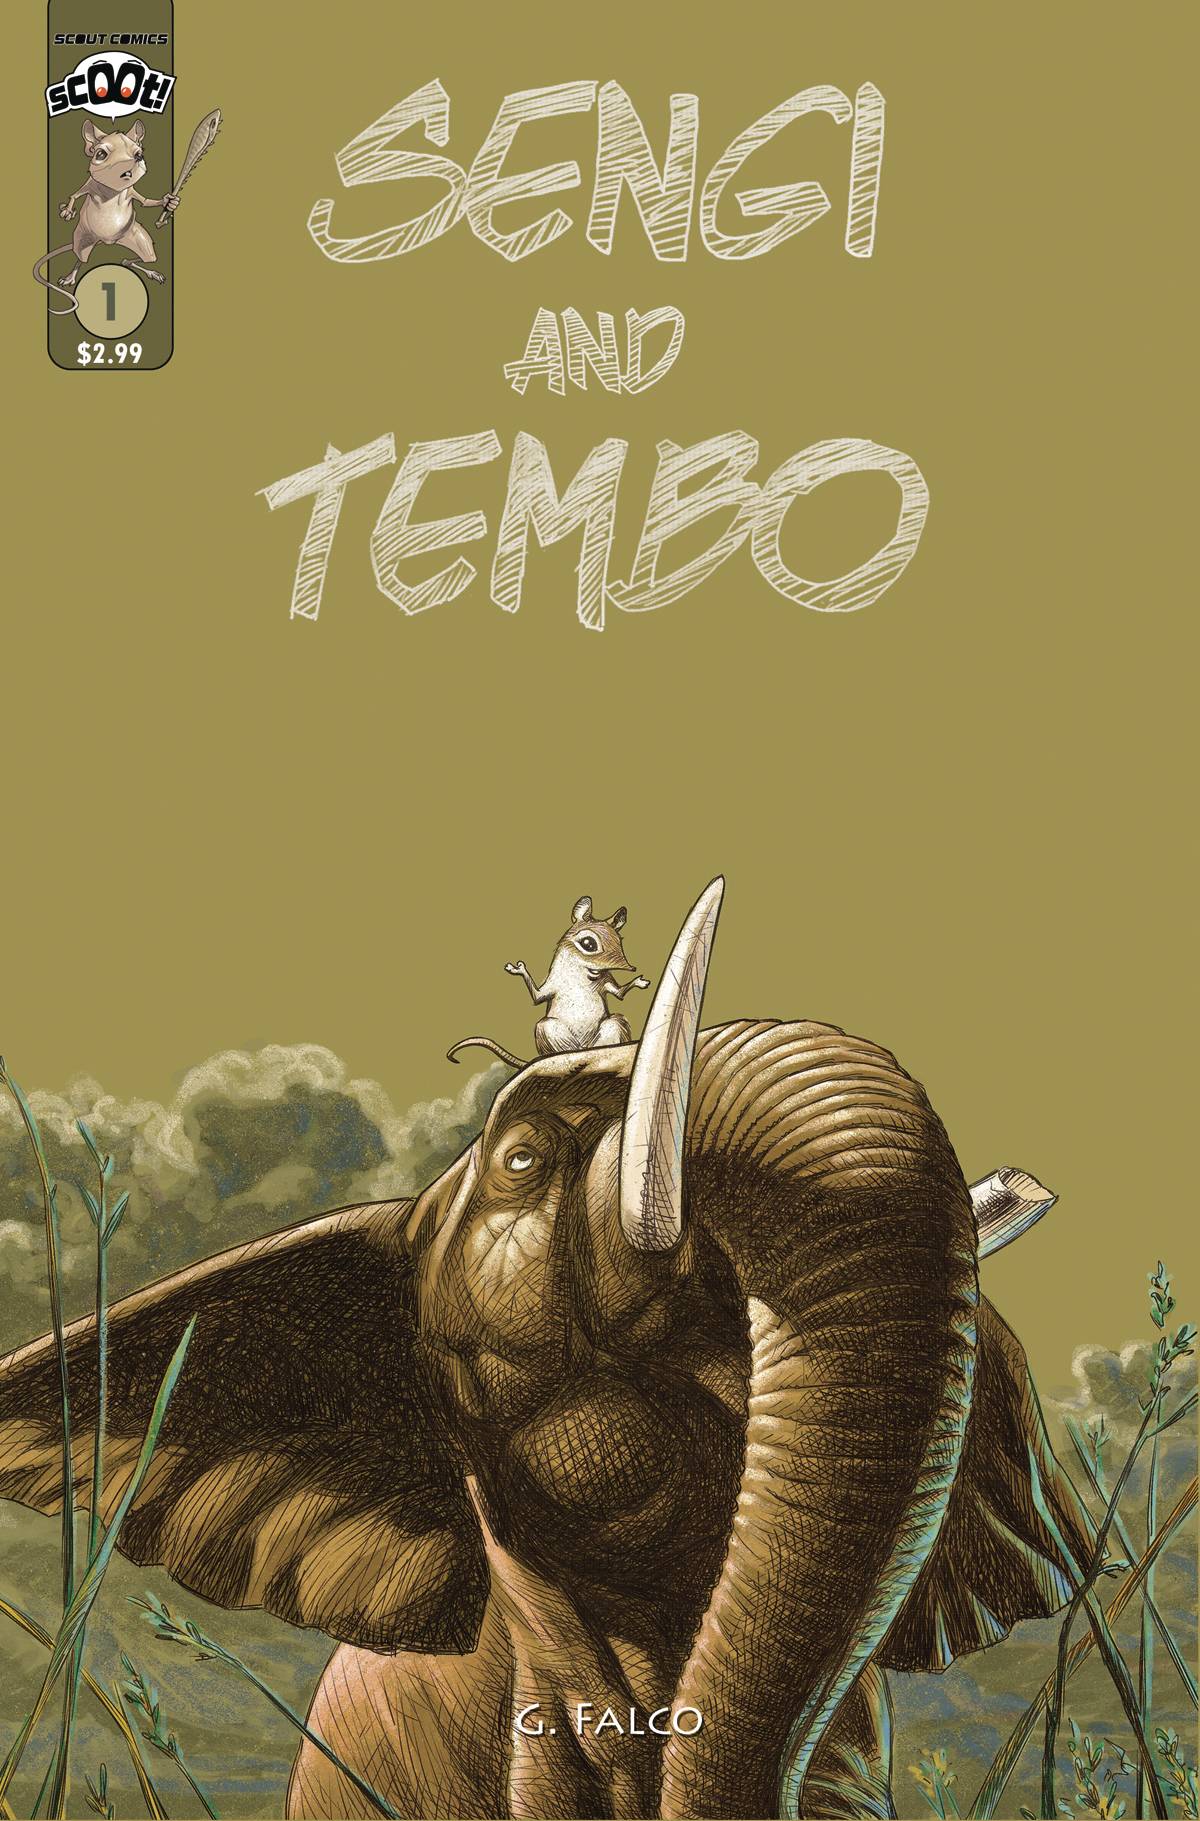 SENGI AND TEMBO #1 2ND PTG